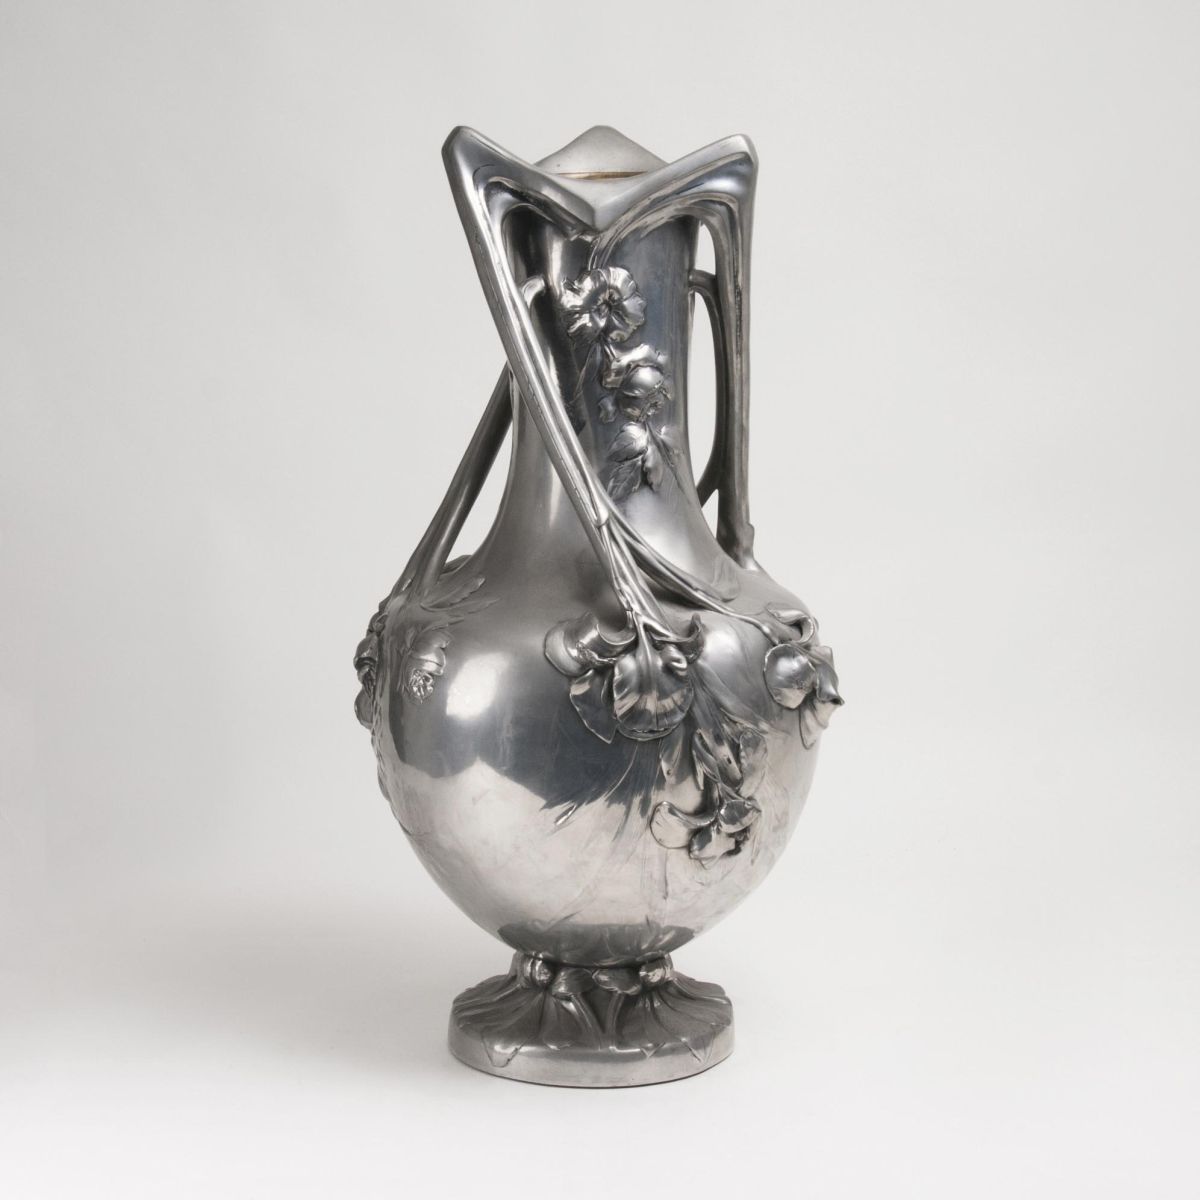 An imposing Art Nouveau Pewter Vase with Floral Decor